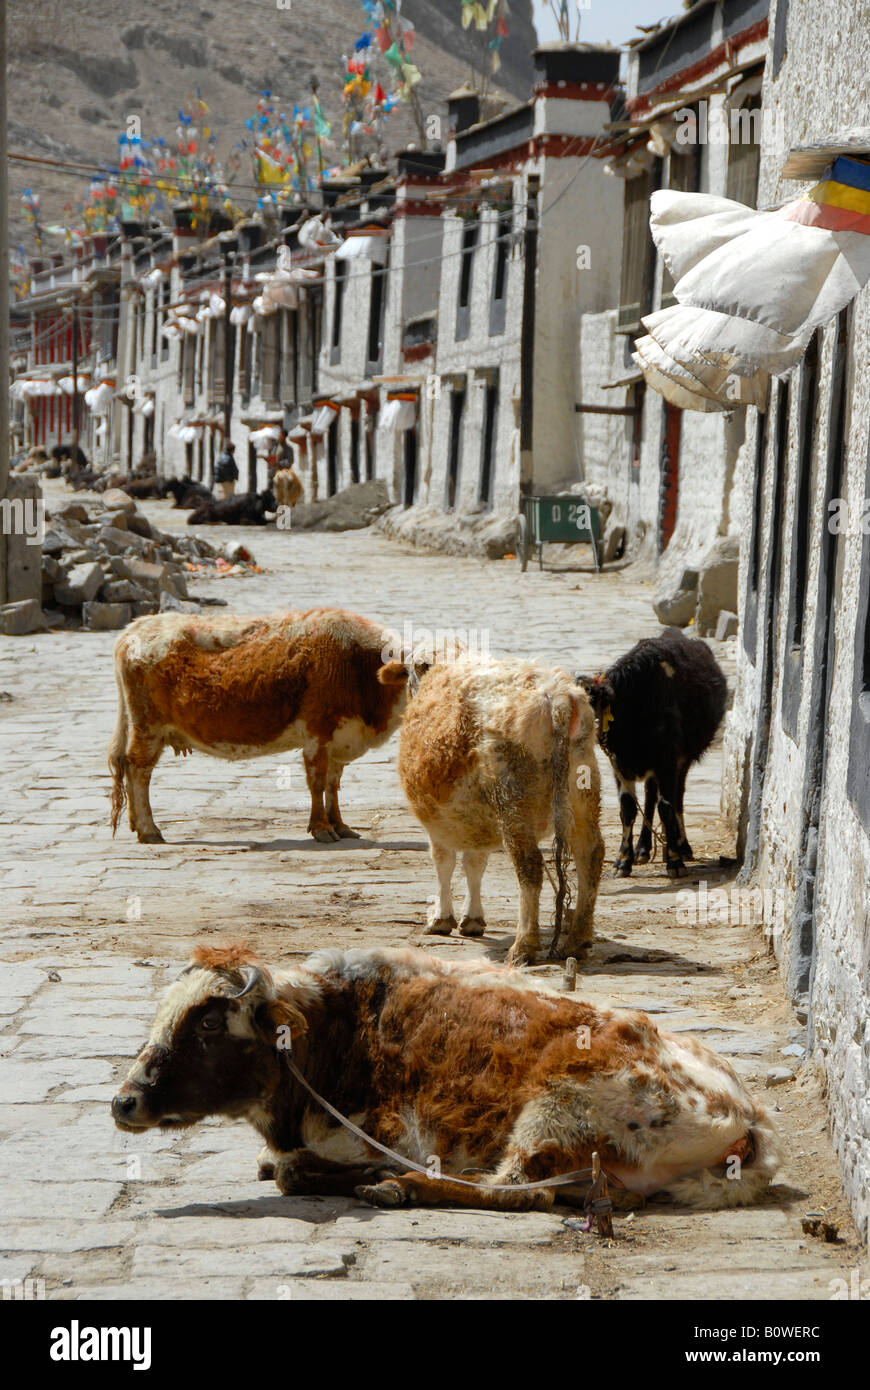 Rinder, stehend und liegend auf einer Straße, Häuser Merkmal in das historische Zentrum von Gyantse, Tibet, China, Asien Stockfoto